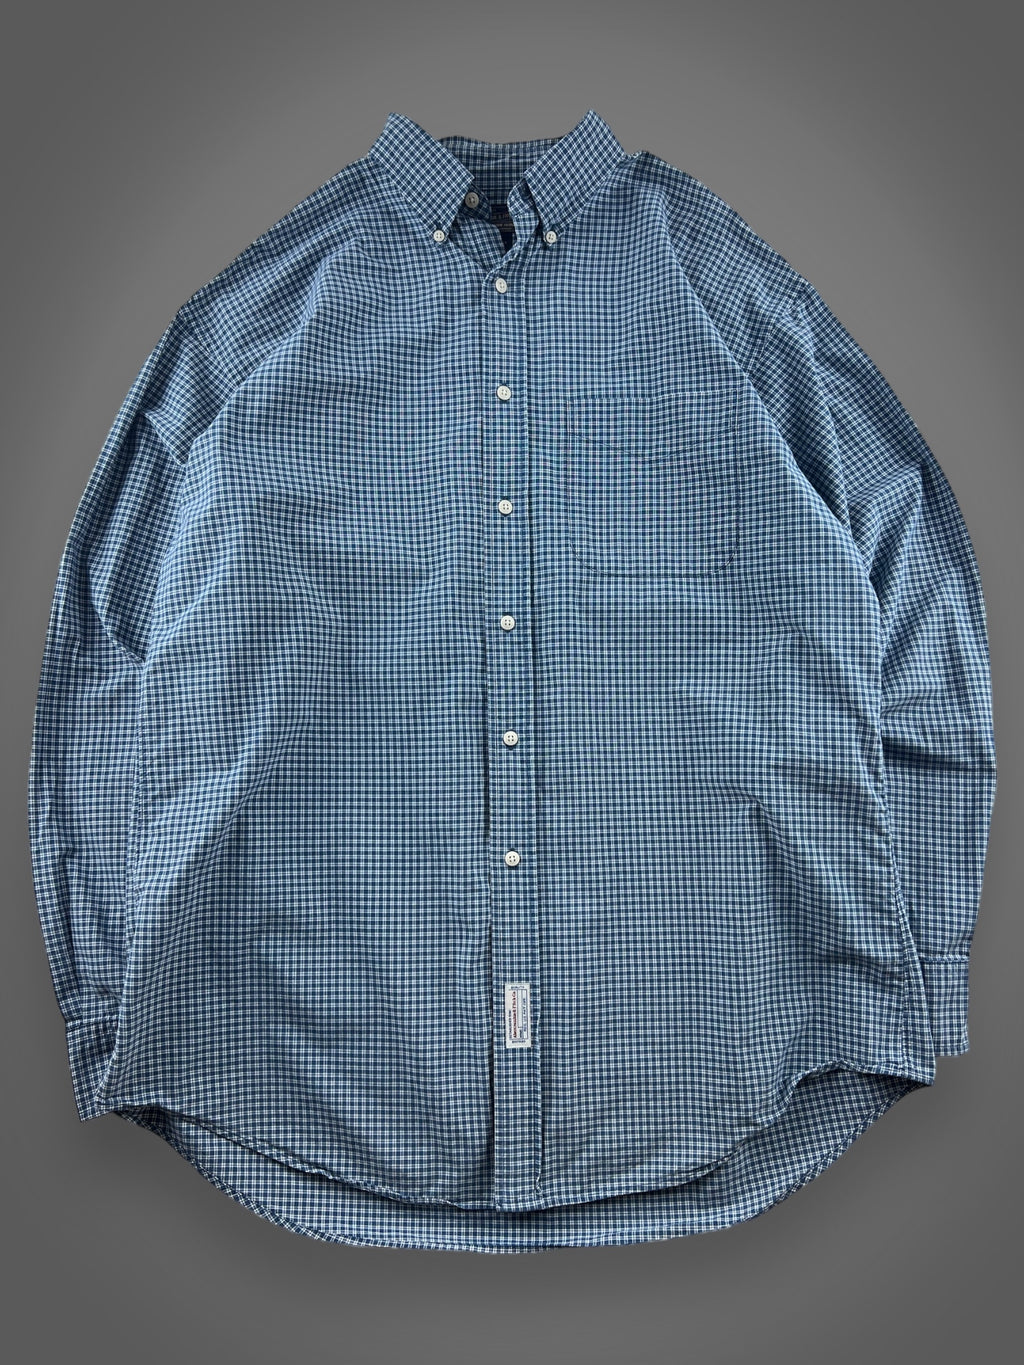 00s Abercrombie plaid button down shirt XL